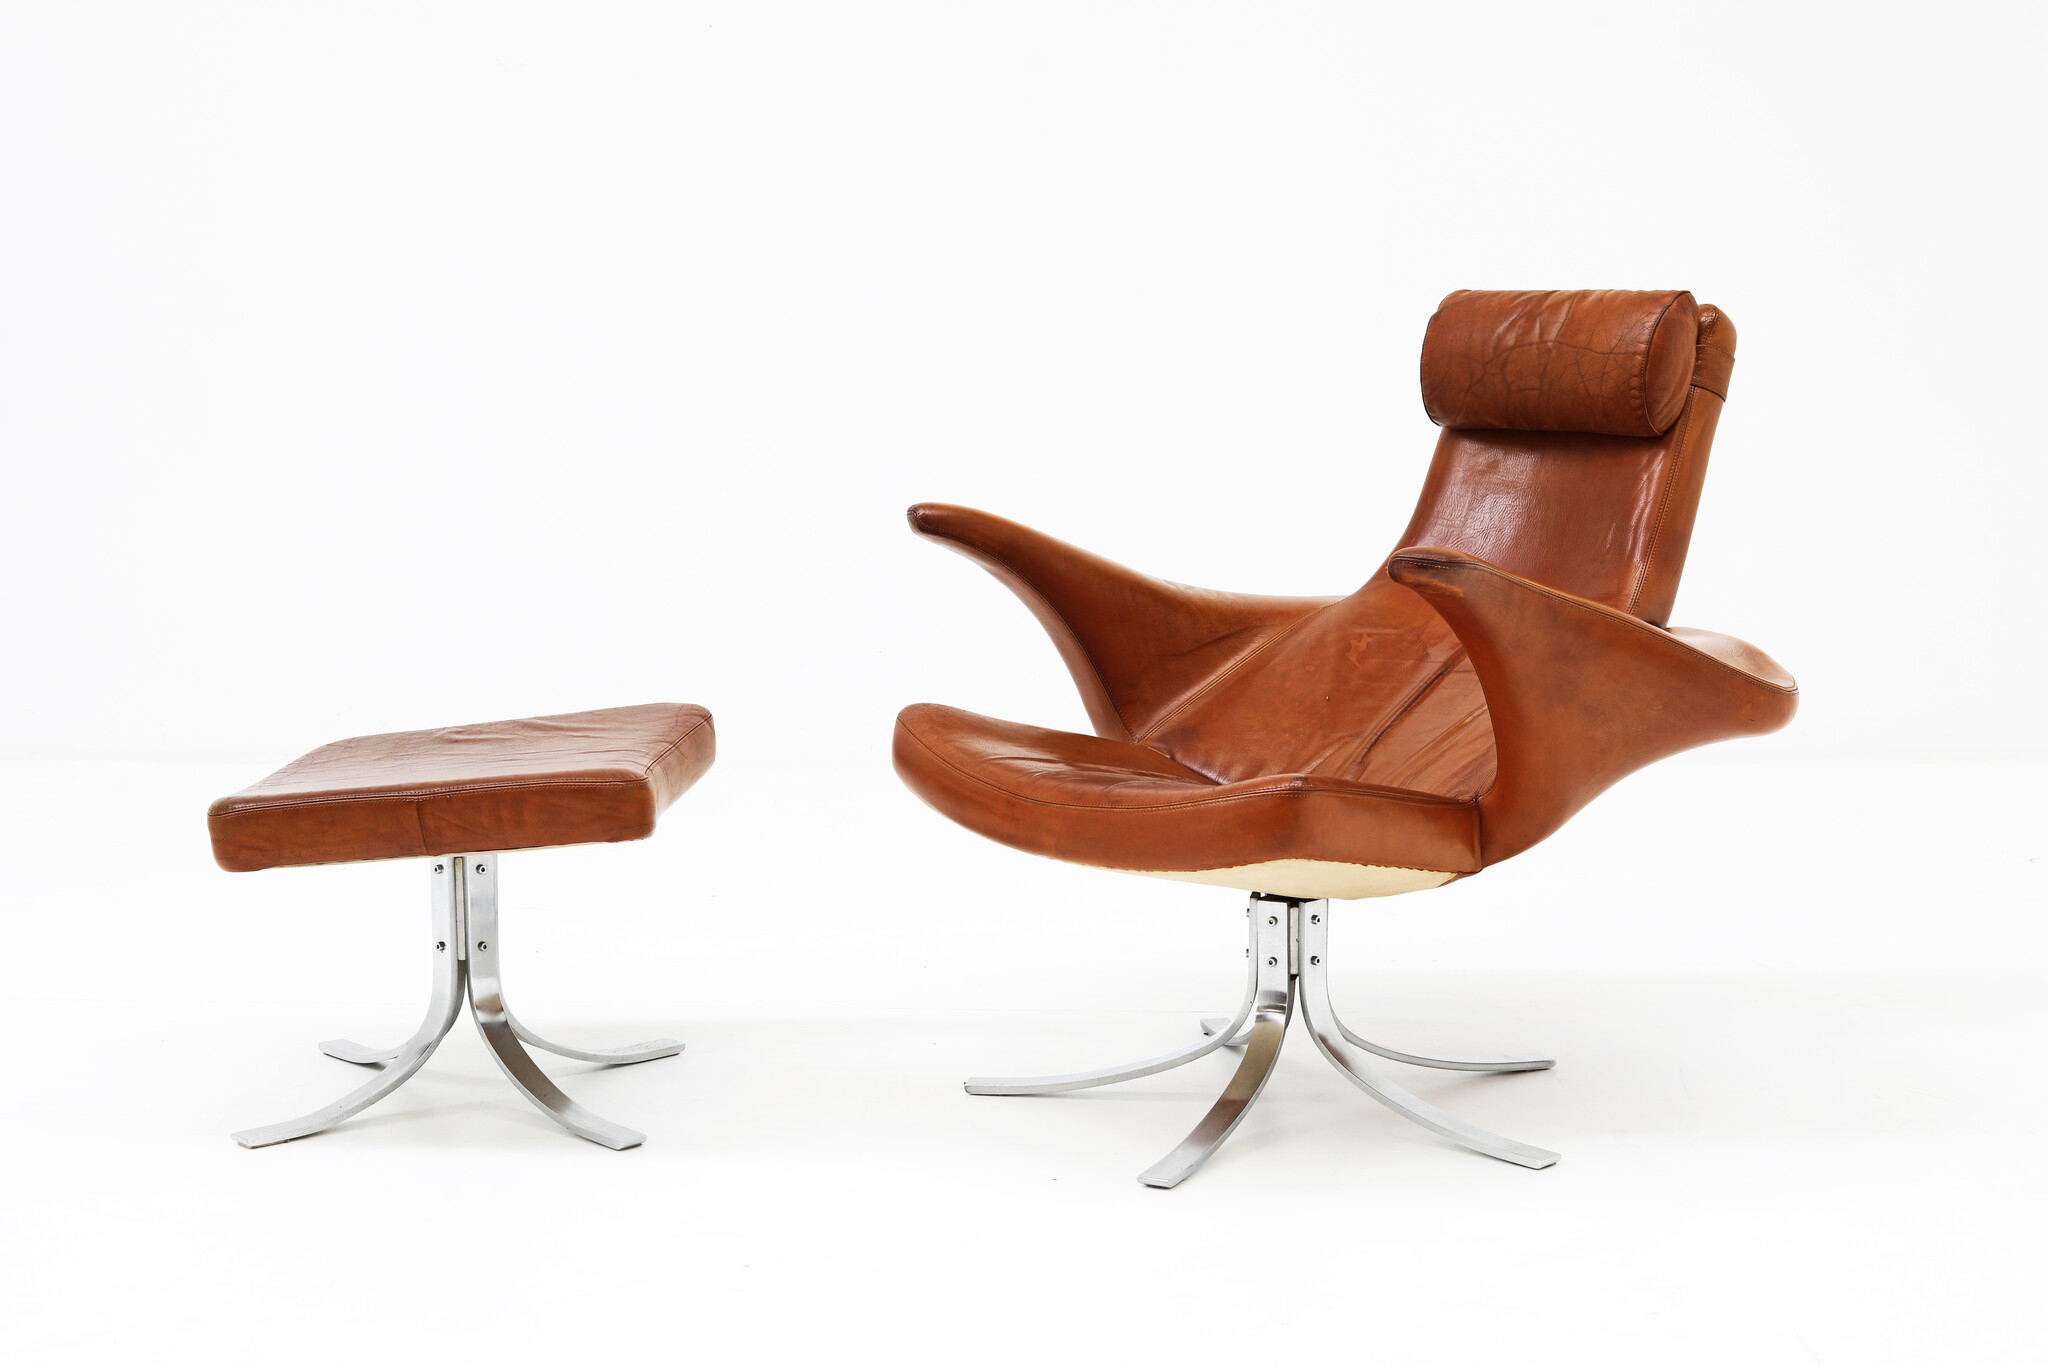 Seagull Chair by Gosta Berg & Stenerik Eriksson for Fritz Hansen, 1968